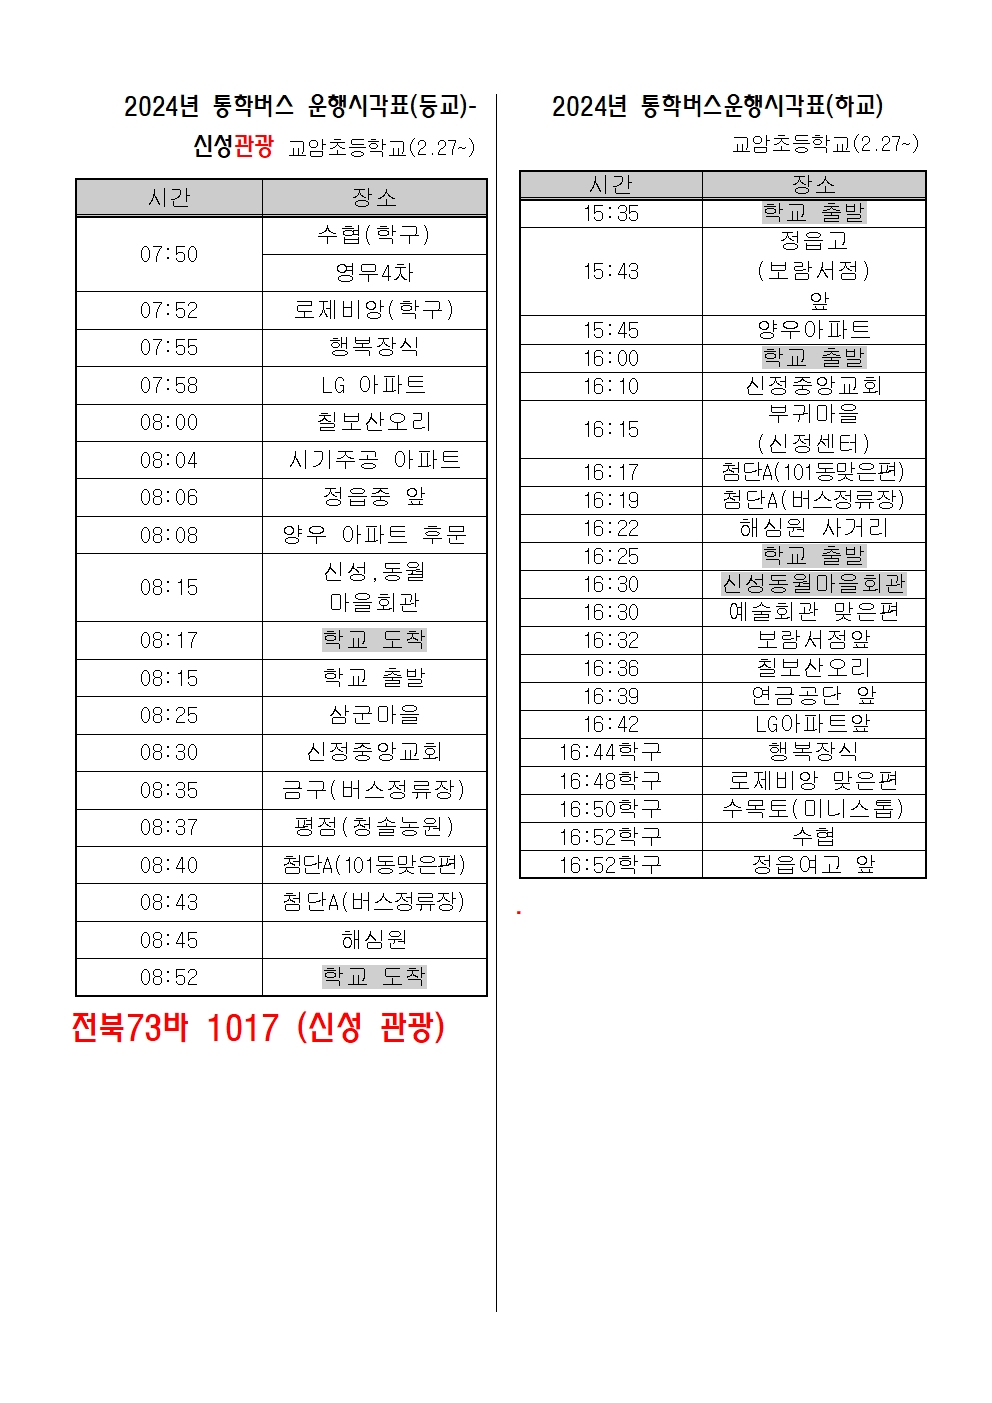 2024 통학버스 시간표(2.27) 학생 번호용001